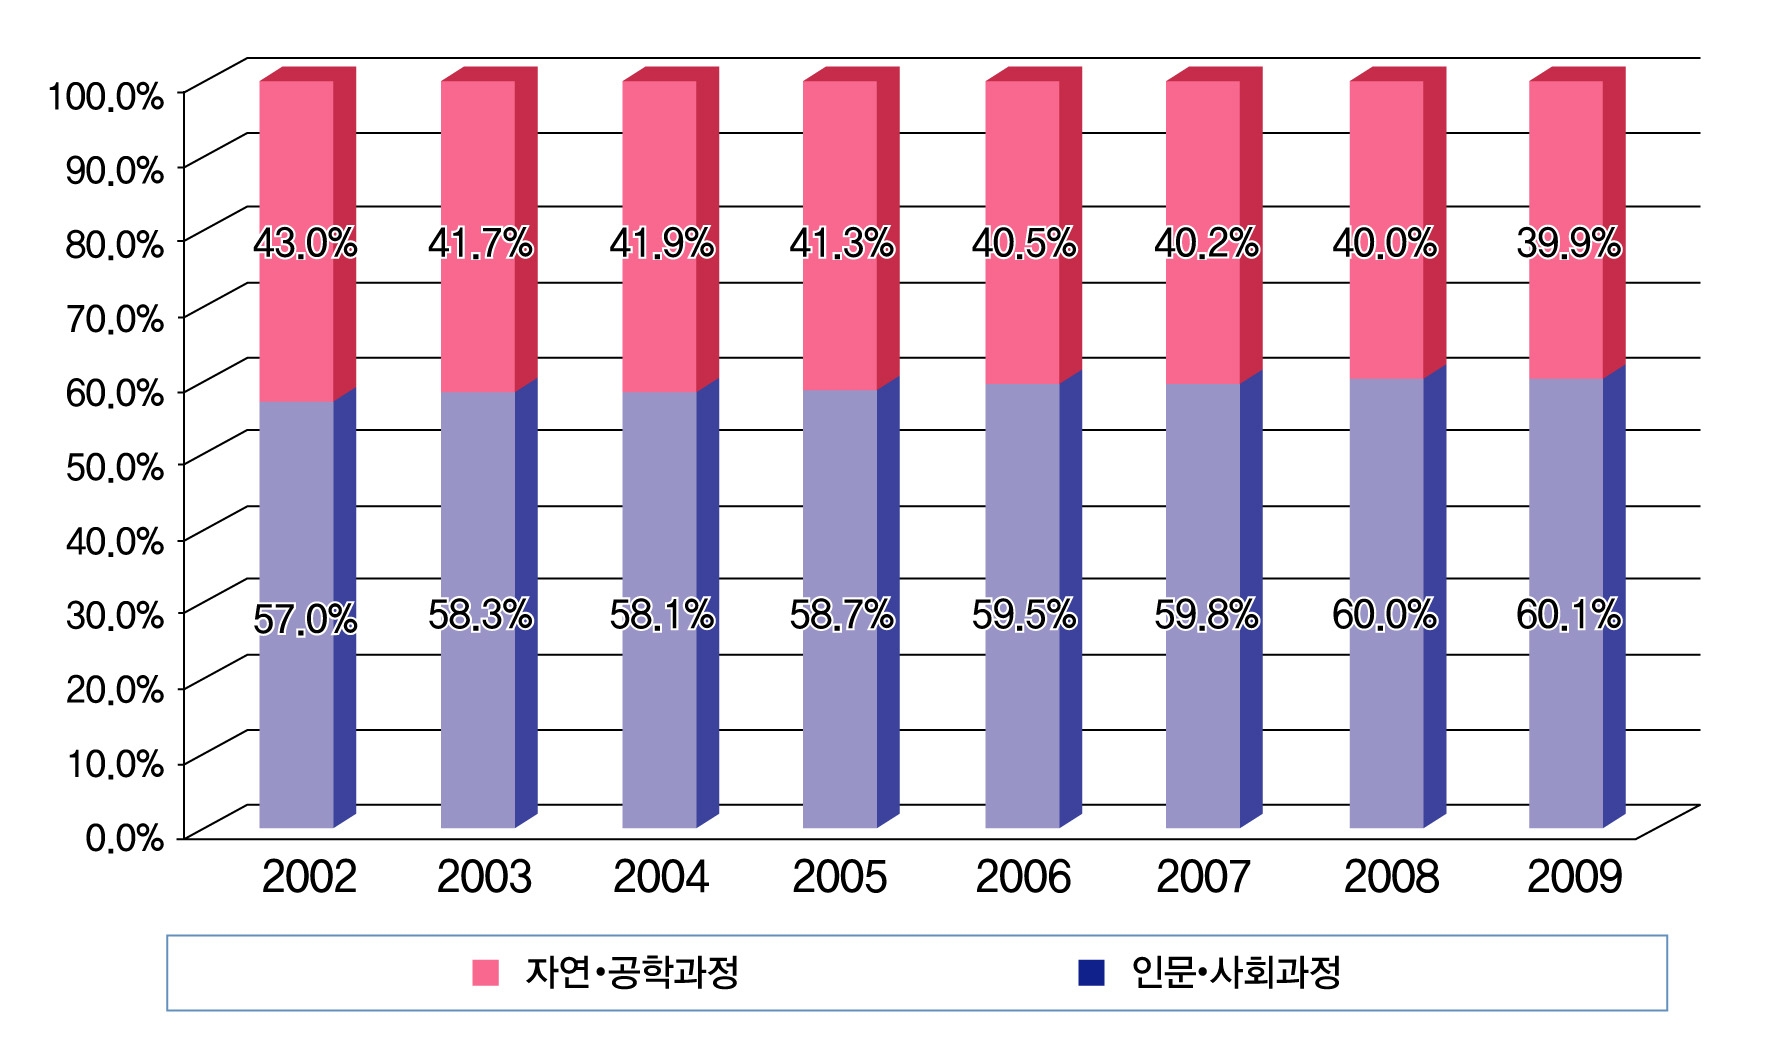 고등학교 2, 3학년생의 계열별 비중 추이(2002년-2009년)